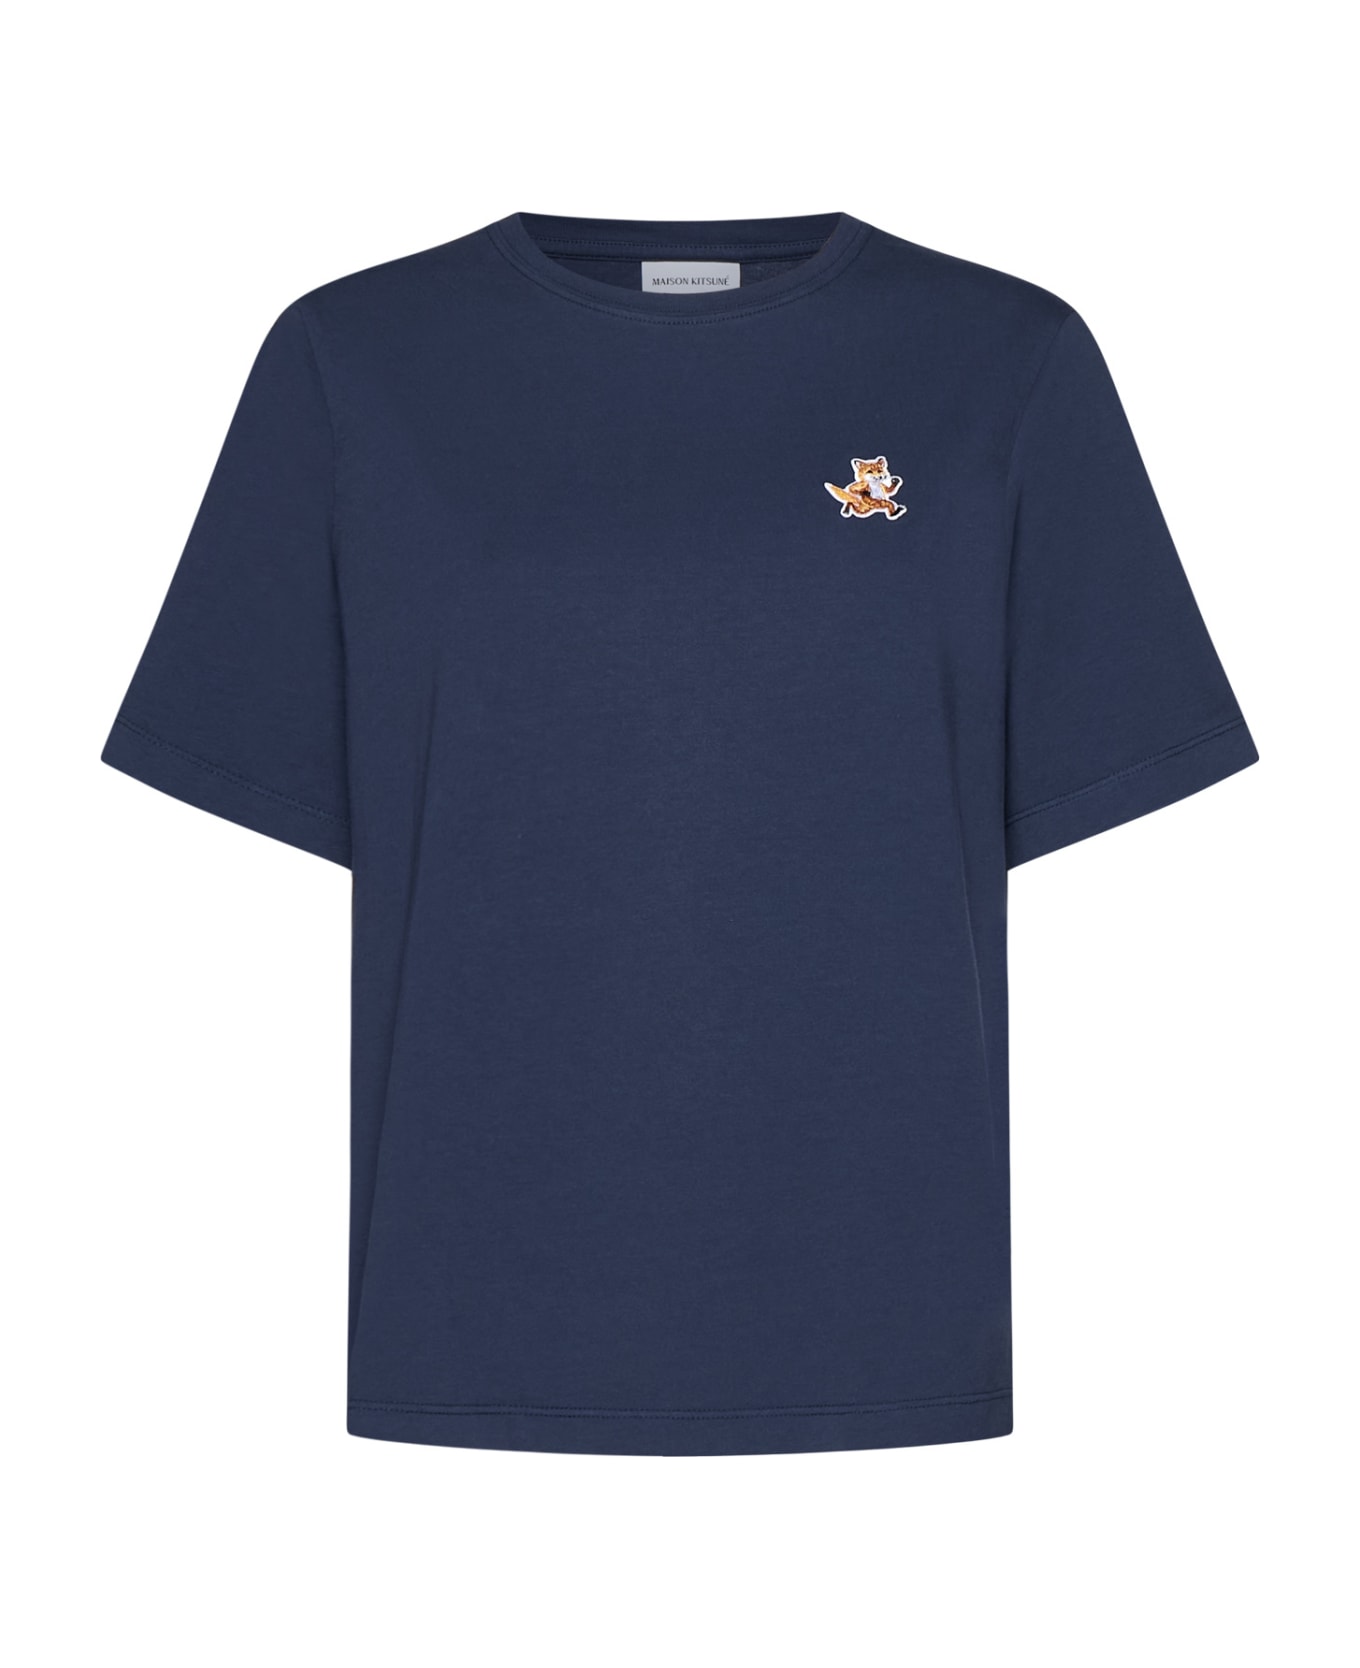 Maison Kitsuné T-Shirt - Ink blue Tシャツ